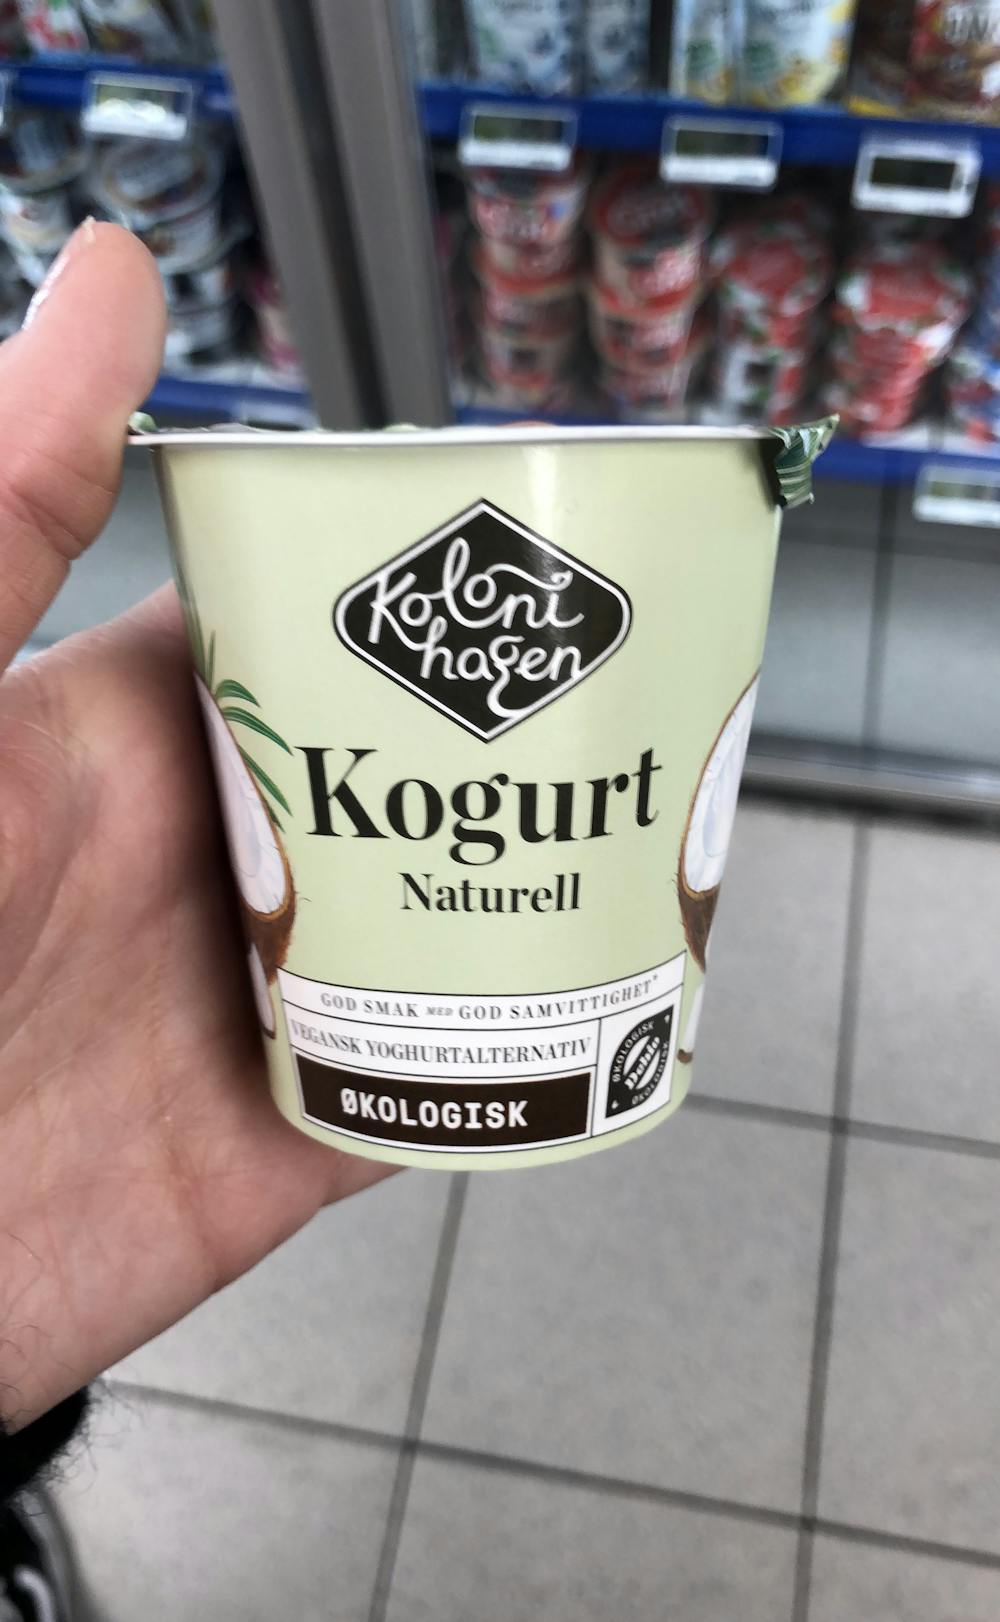 Kogurt naturell, Kolonihagen